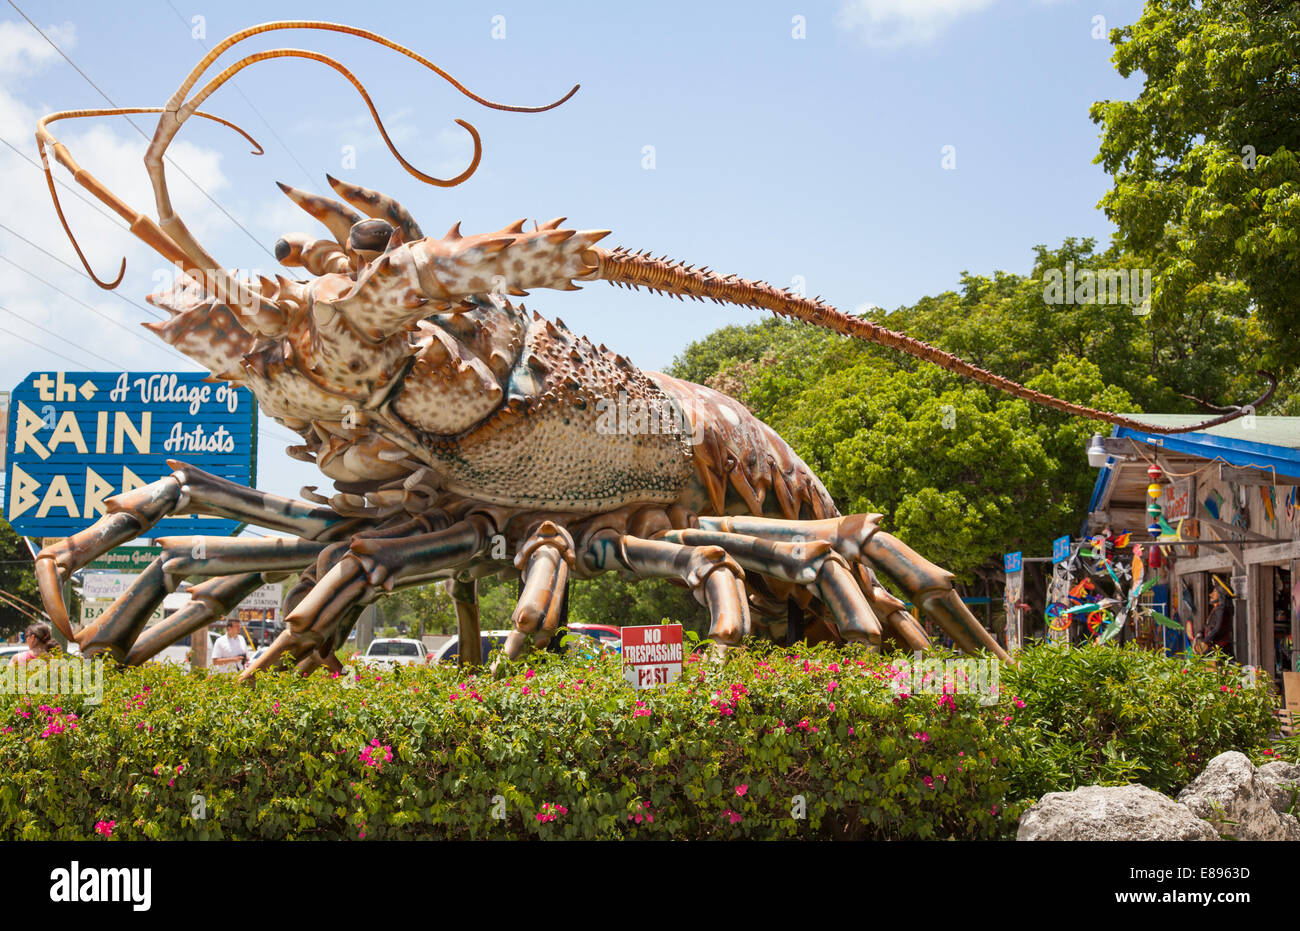 Florida Langosta escultura gigante att él Barril de lluvia tiendas en Islamorada en los Cayos de la Florida Foto de stock